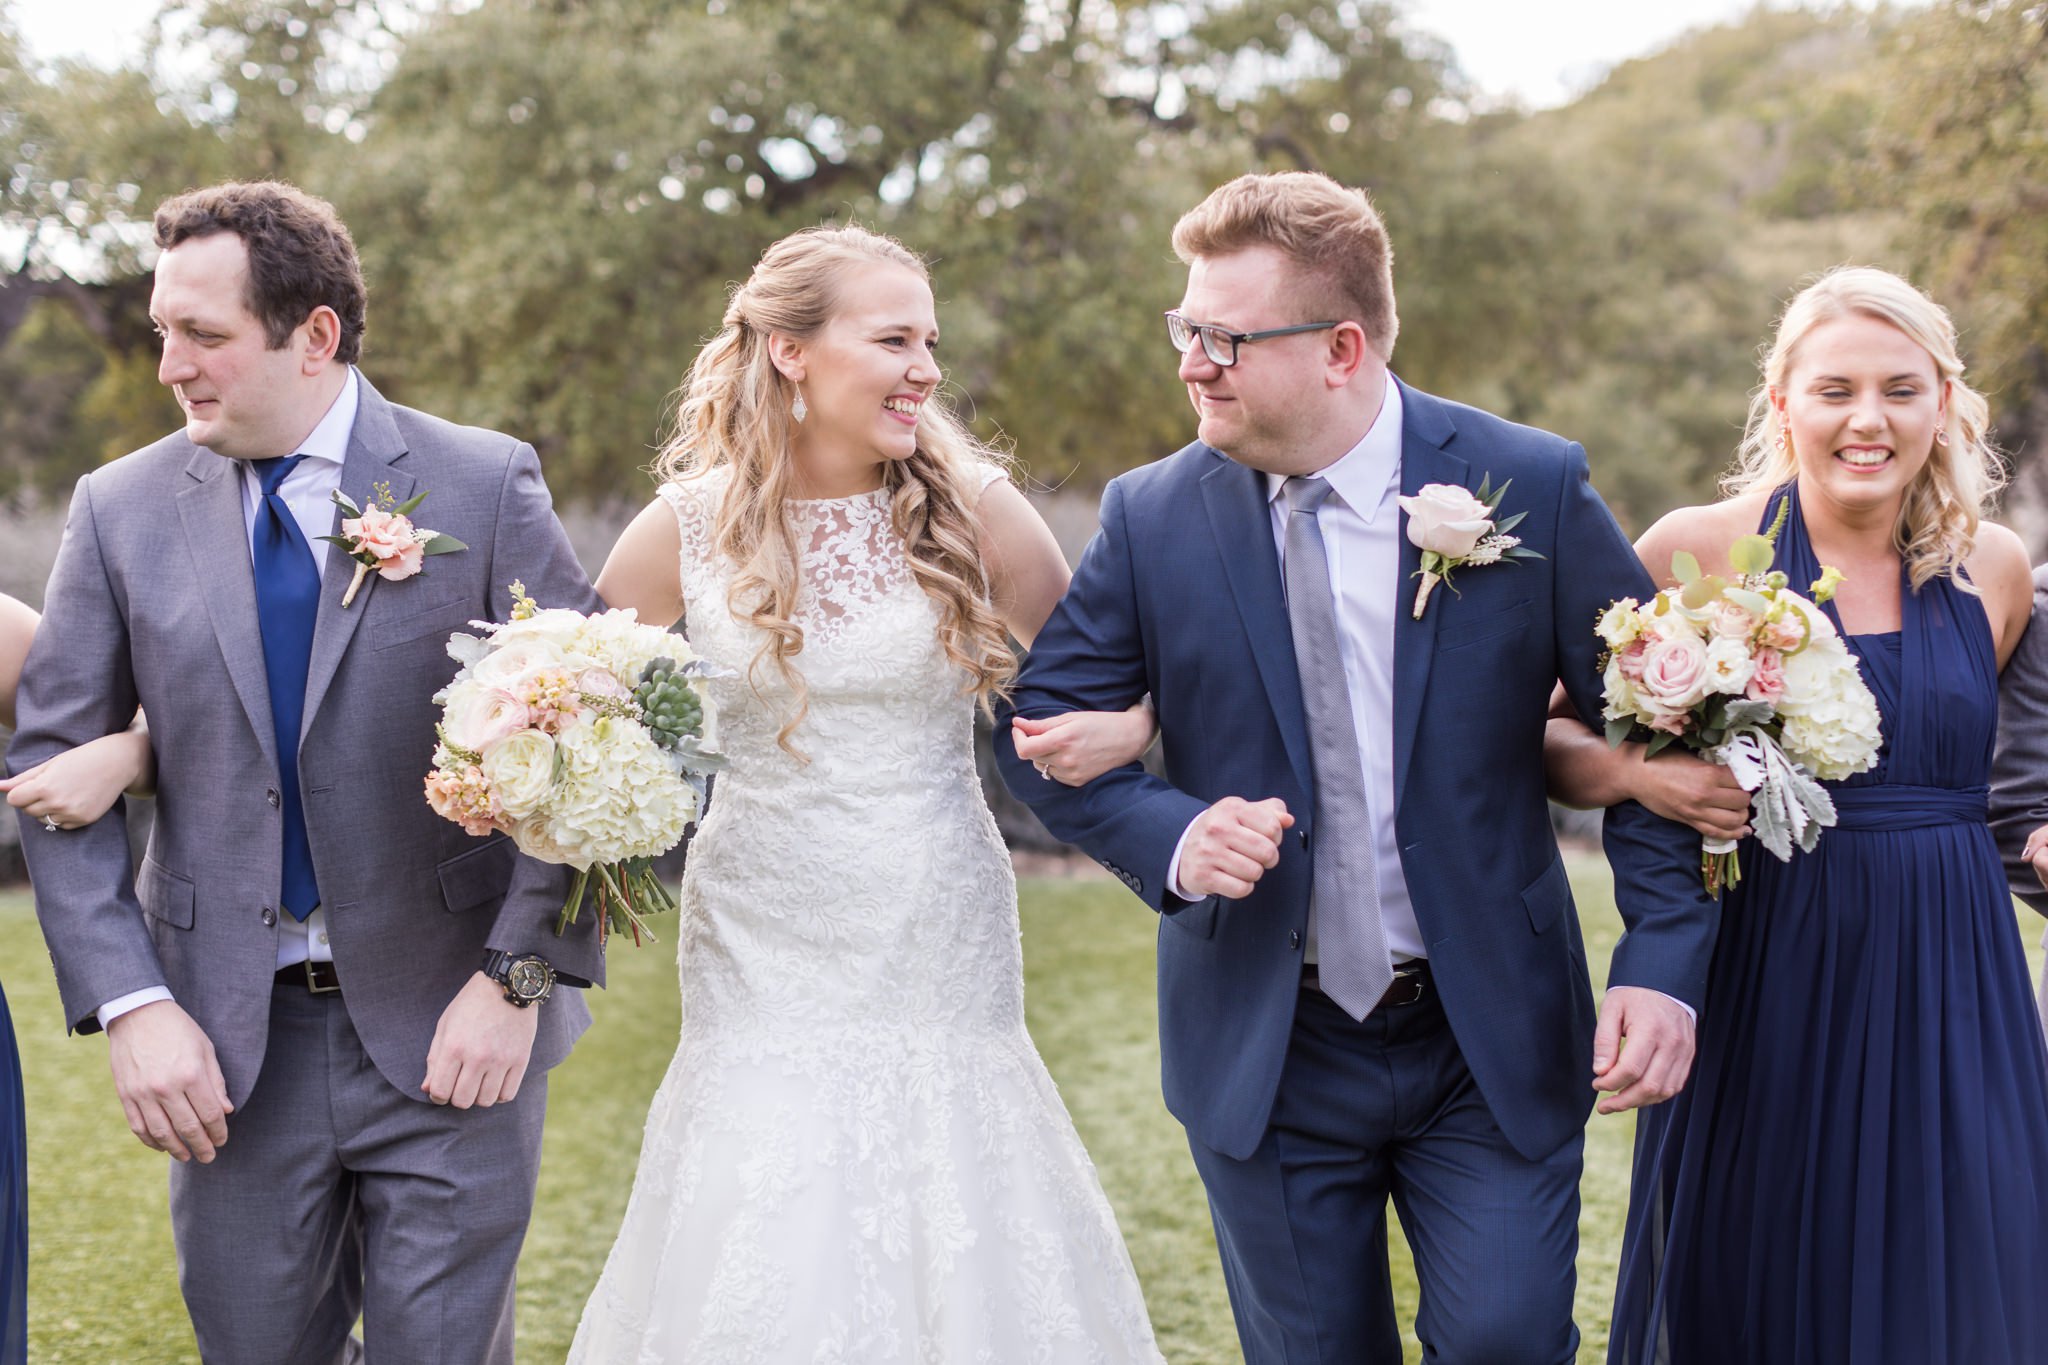 A Navy and Blush Wedding at Kendall Plantation in Boerne, TX by Dawn Elizabeth Studios, San Antonio Wedding Photographer